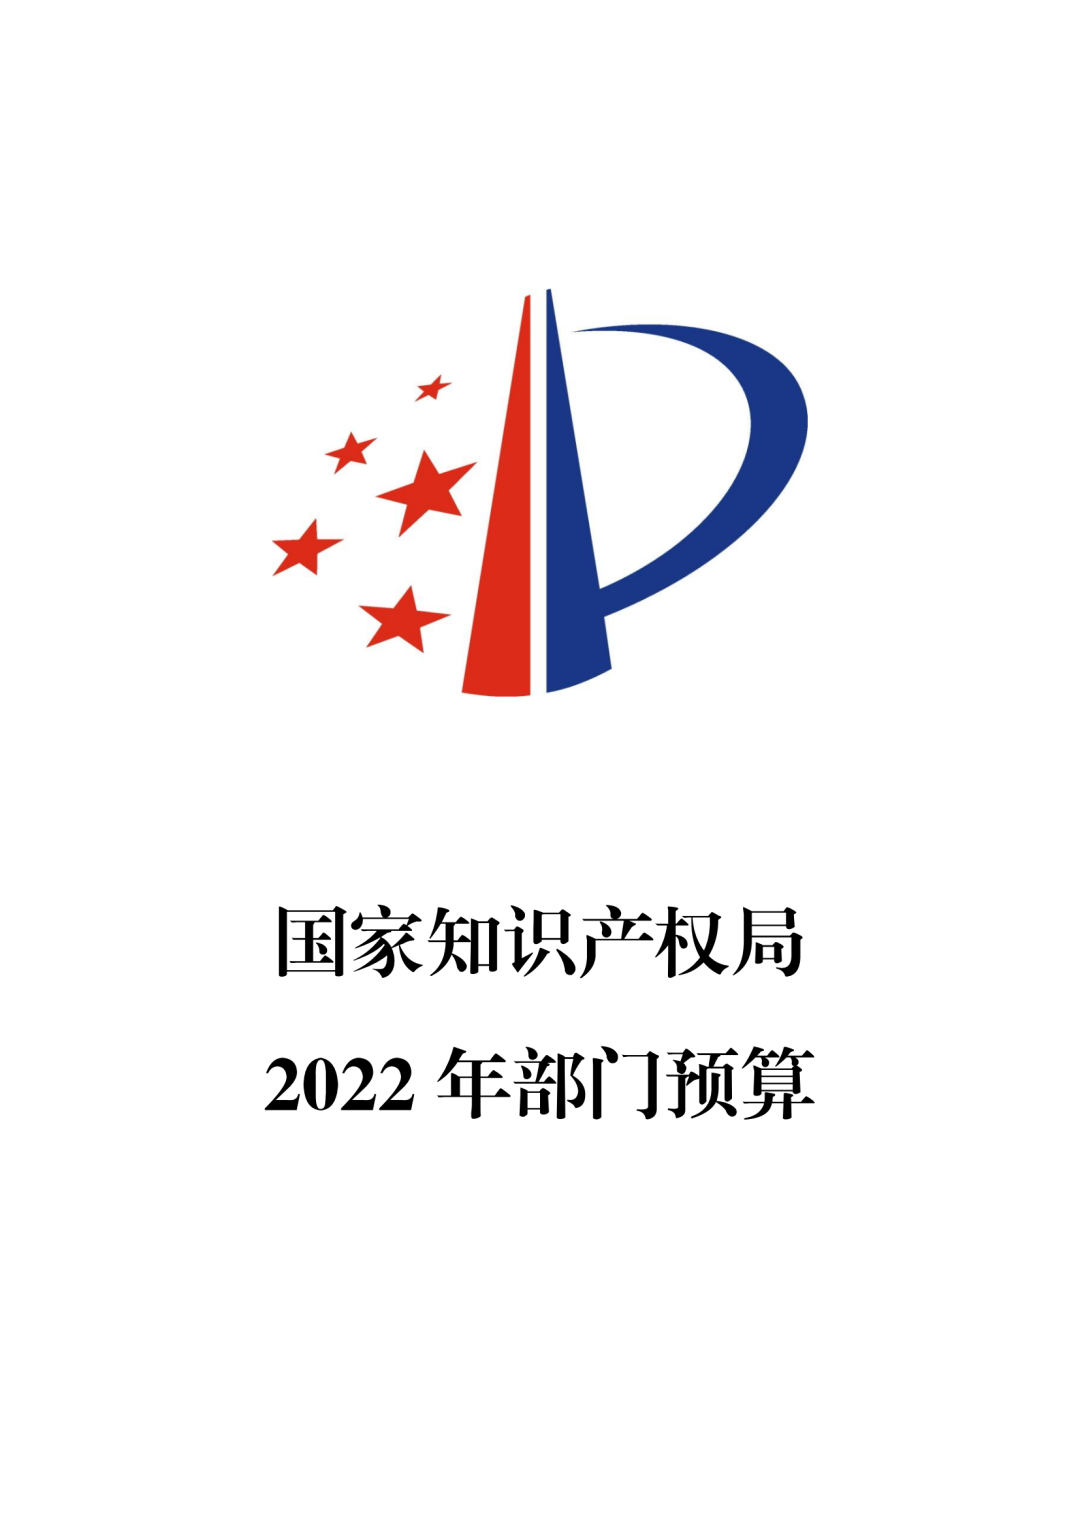 国知局2022年部门预算：专利审查费44.7亿元，评选中国专利奖项目数量≥2000项